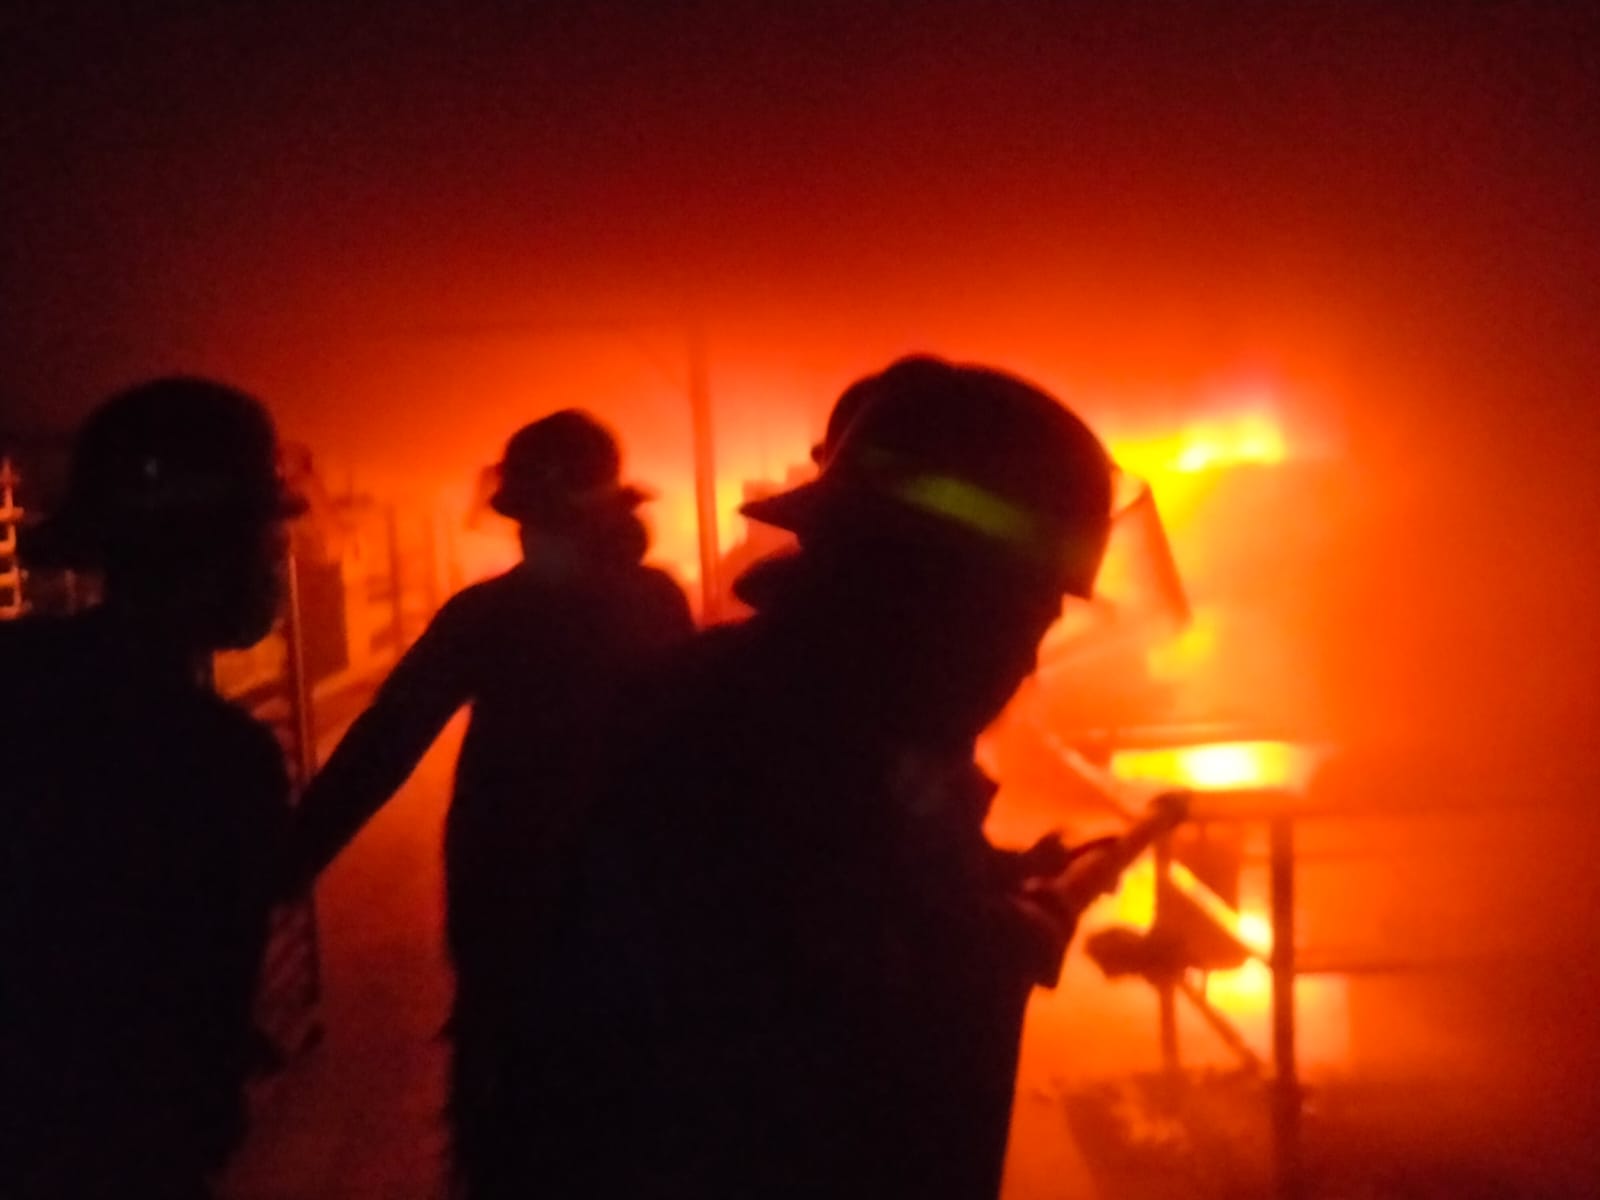 Kebakaran Mesin Produksi di Pergudangan Meiko Abadi 2 Blok B20 Desa Sukorejo Kecamatan Buduran